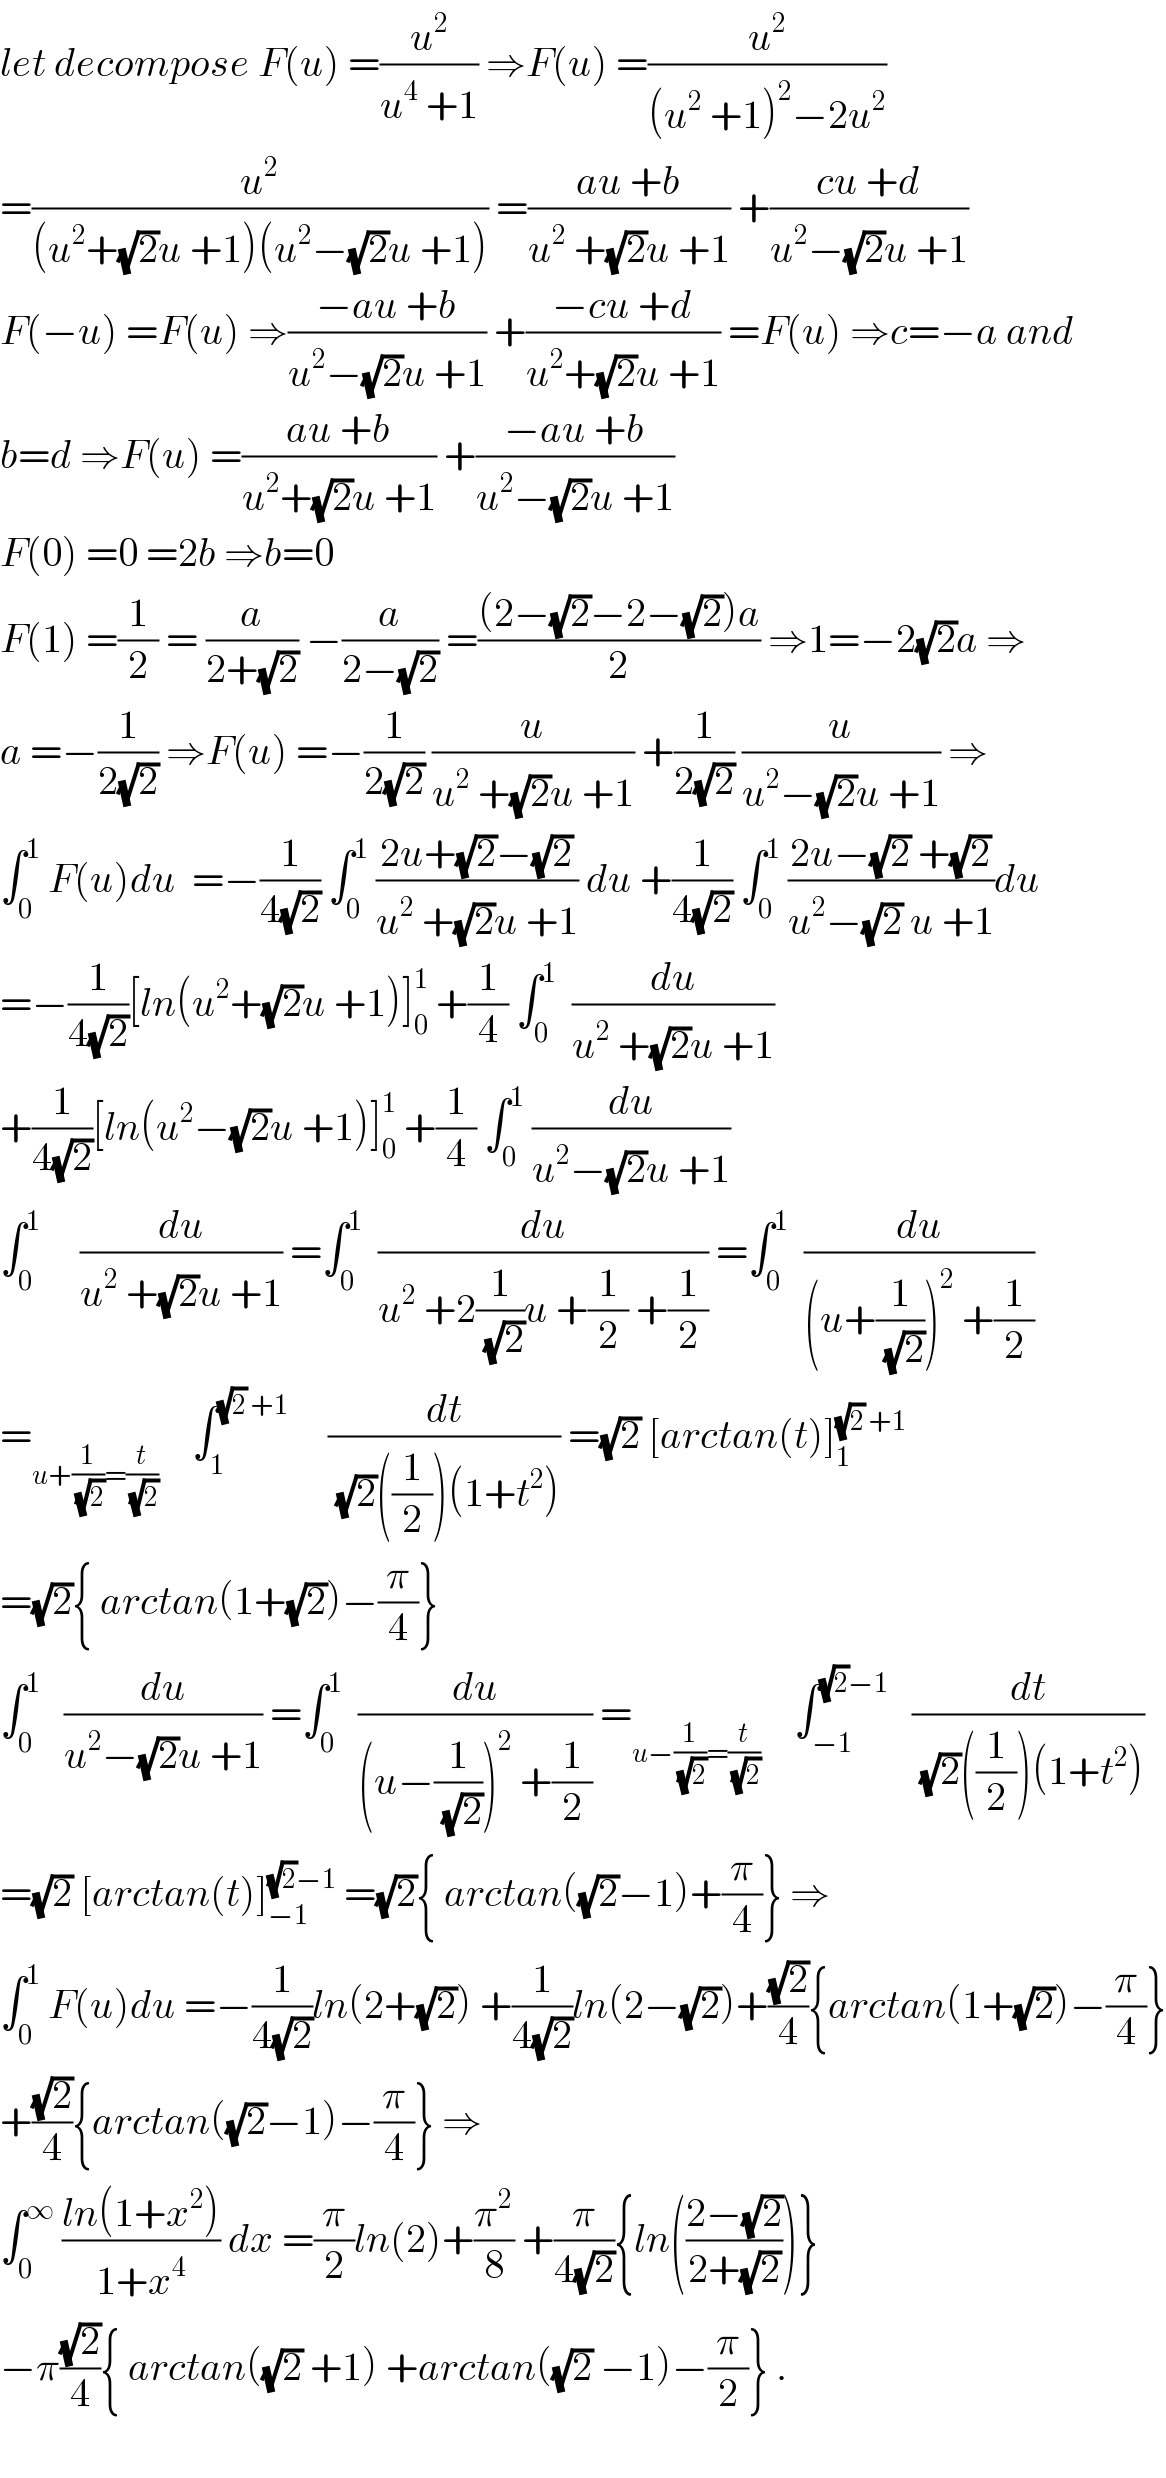 let decompose F(u) =(u^2 /(u^4  +1)) ⇒F(u) =(u^2 /((u^2  +1)^2 −2u^2 ))  =(u^2 /((u^2 +(√2)u +1)(u^2 −(√2)u +1))) =((au +b)/(u^2  +(√2)u +1)) +((cu +d)/(u^2 −(√2)u +1))  F(−u) =F(u) ⇒((−au +b)/(u^2 −(√2)u +1)) +((−cu +d)/(u^2 +(√2)u +1)) =F(u) ⇒c=−a and   b=d ⇒F(u) =((au +b)/(u^2 +(√2)u +1)) +((−au +b)/(u^2 −(√2)u +1))  F(0) =0 =2b ⇒b=0   F(1) =(1/2) = (a/(2+(√2))) −(a/(2−(√2))) =(((2−(√2)−2−(√2))a)/2) ⇒1=−2(√2)a ⇒  a =−(1/(2(√2))) ⇒F(u) =−(1/(2(√2))) (u/(u^2  +(√2)u +1)) +(1/(2(√2))) (u/(u^2 −(√2)u +1)) ⇒  ∫_0 ^1  F(u)du  =−(1/(4(√2))) ∫_0 ^1  ((2u+(√2)−(√2))/(u^2  +(√2)u +1)) du +(1/(4(√2))) ∫_0 ^1  ((2u−(√2) +(√2))/(u^2 −(√2) u +1))du  =−(1/(4(√2)))[ln(u^2 +(√2)u +1)]_0 ^1  +(1/4) ∫_0 ^1   (du/(u^2  +(√2)u +1))  +(1/(4(√2)))[ln(u^2 −(√2)u +1)]_0 ^1  +(1/4) ∫_0 ^1  (du/(u^2 −(√2)u +1))  ∫_0 ^1      (du/(u^2  +(√2)u +1)) =∫_0 ^1   (du/(u^2  +2(1/(√2))u +(1/2) +(1/2))) =∫_0 ^1   (du/((u+(1/(√2)))^2  +(1/2)))  =_(u+(1/(√2))=(t/(√2)))     ∫_1 ^((√2) +1)      (dt/((√2)((1/2))(1+t^2 ))) =(√2) [arctan(t)]_1 ^((√2) +1)   =(√2){ arctan(1+(√2))−(π/4)}  ∫_0 ^1    (du/(u^2 −(√2)u +1)) =∫_0 ^1   (du/((u−(1/(√2)))^2  +(1/2))) =_(u−(1/(√2))=(t/(√2)))     ∫_(−1) ^((√2)−1)    (dt/((√2)((1/2))(1+t^2 )))  =(√2) [arctan(t)]_(−1) ^((√2)−1)  =(√2){ arctan((√2)−1)+(π/4)} ⇒  ∫_0 ^1  F(u)du =−(1/(4(√2)))ln(2+(√2)) +(1/(4(√2)))ln(2−(√2))+((√2)/4){arctan(1+(√2))−(π/4)}  +((√2)/4){arctan((√2)−1)−(π/4)} ⇒  ∫_0 ^∞  ((ln(1+x^2 ))/(1+x^4 )) dx =(π/2)ln(2)+(π^2 /8) +(π/(4(√2))){ln(((2−(√2))/(2+(√2))))}  −π((√2)/4){ arctan((√2) +1) +arctan((√2) −1)−(π/2)} .    